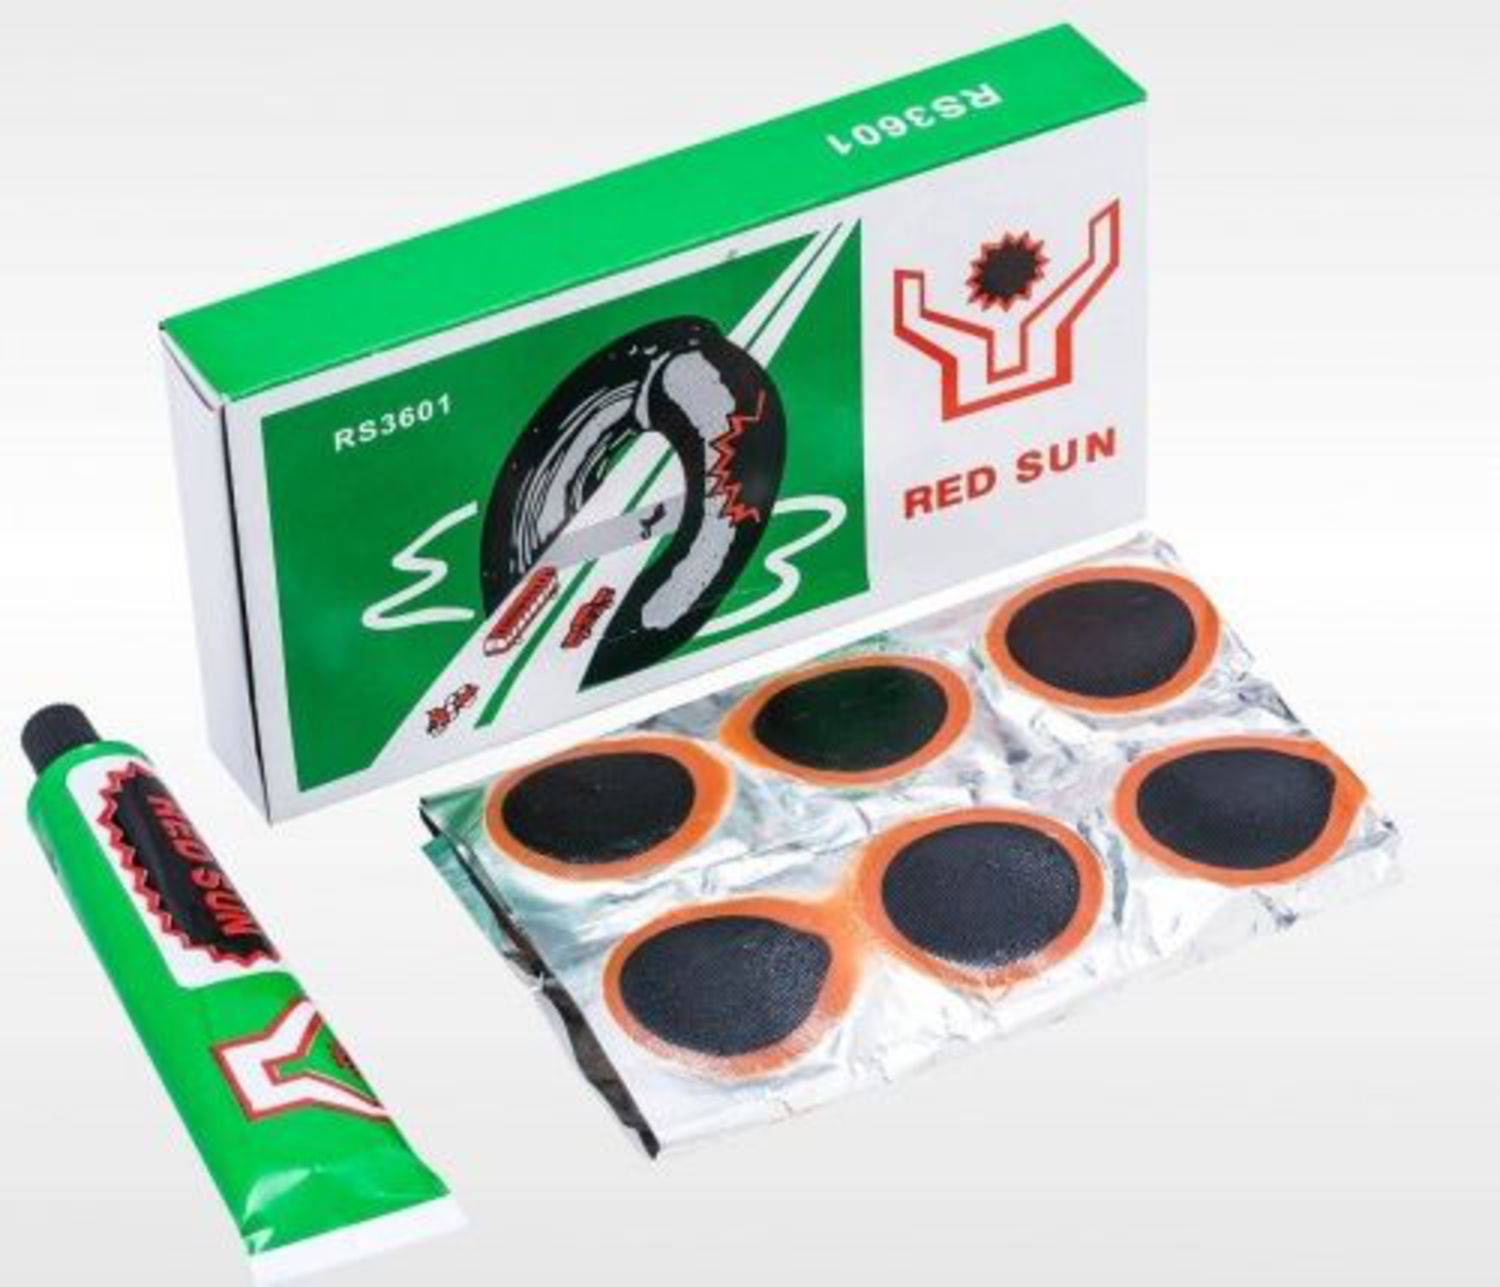 Сколько стоят заплатки. Велоаптечка Red Sun rs3601. Red Sun латки rs3601 тюбик. Набор для ремонта камеры 36 заплаток rs3601. Латки для камер велосипеда Red Sun rs3601.